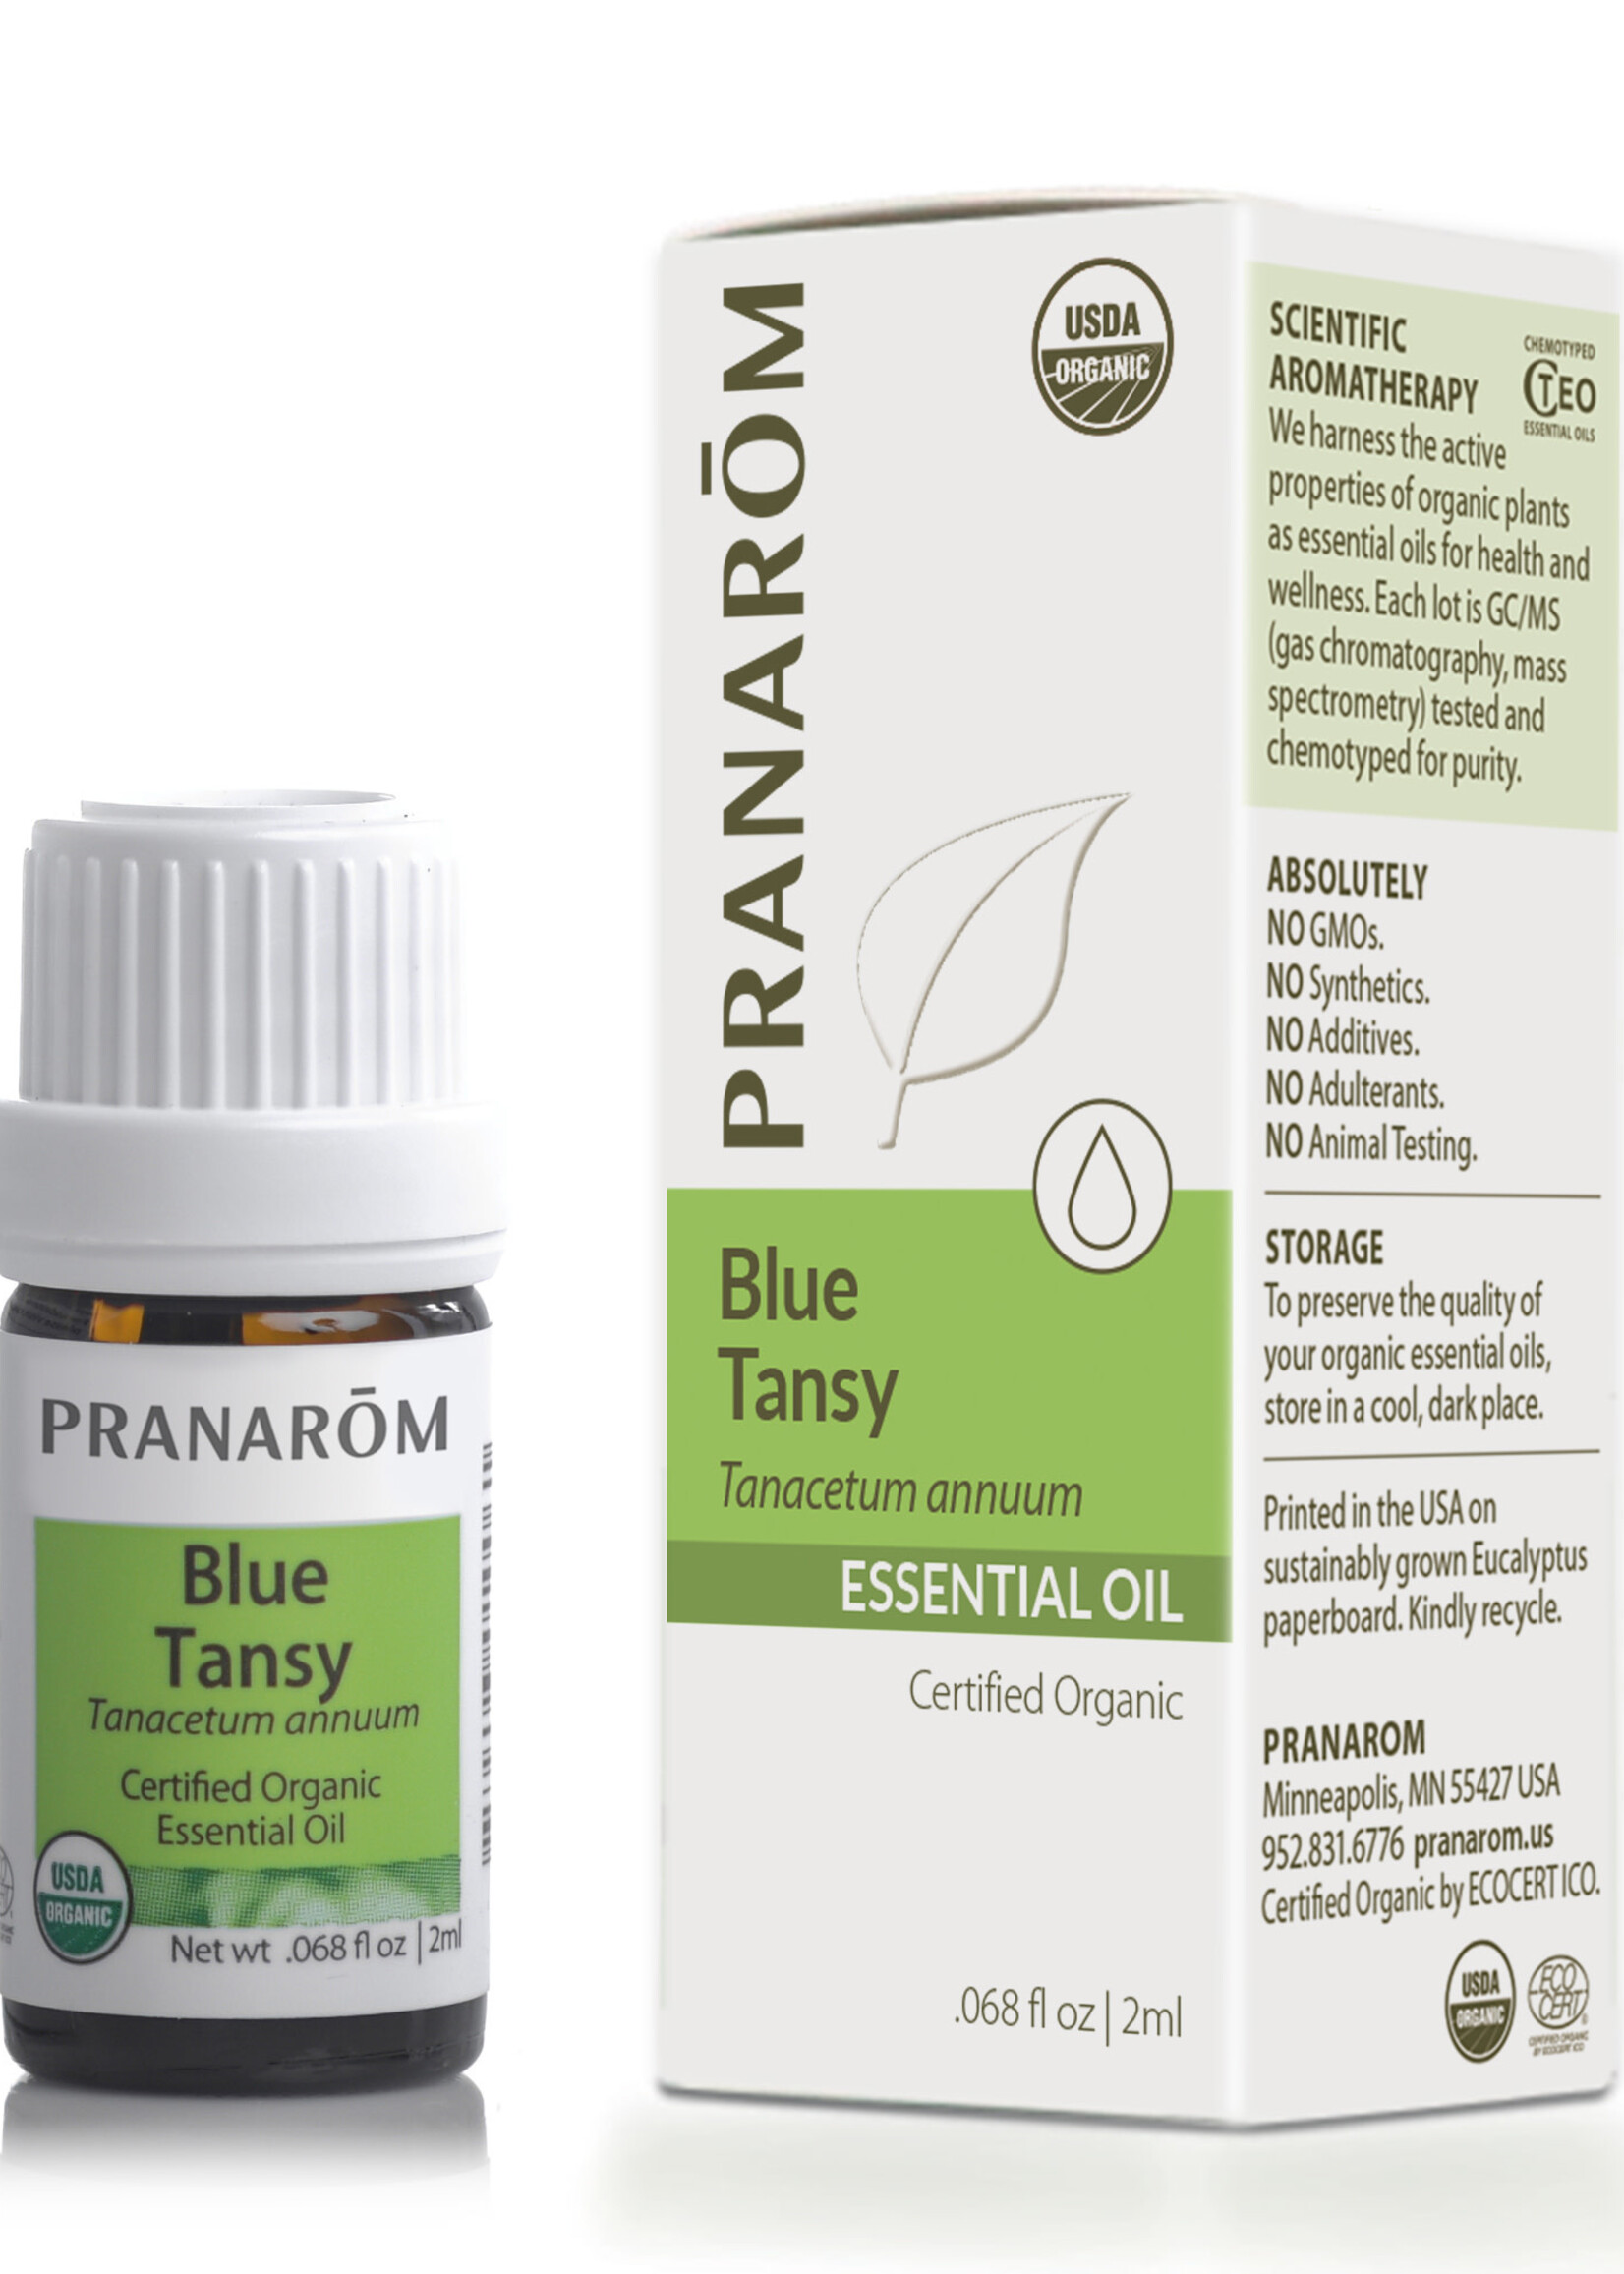 Pranoram Blue Tansy 2ml (Tanacetum annuum)